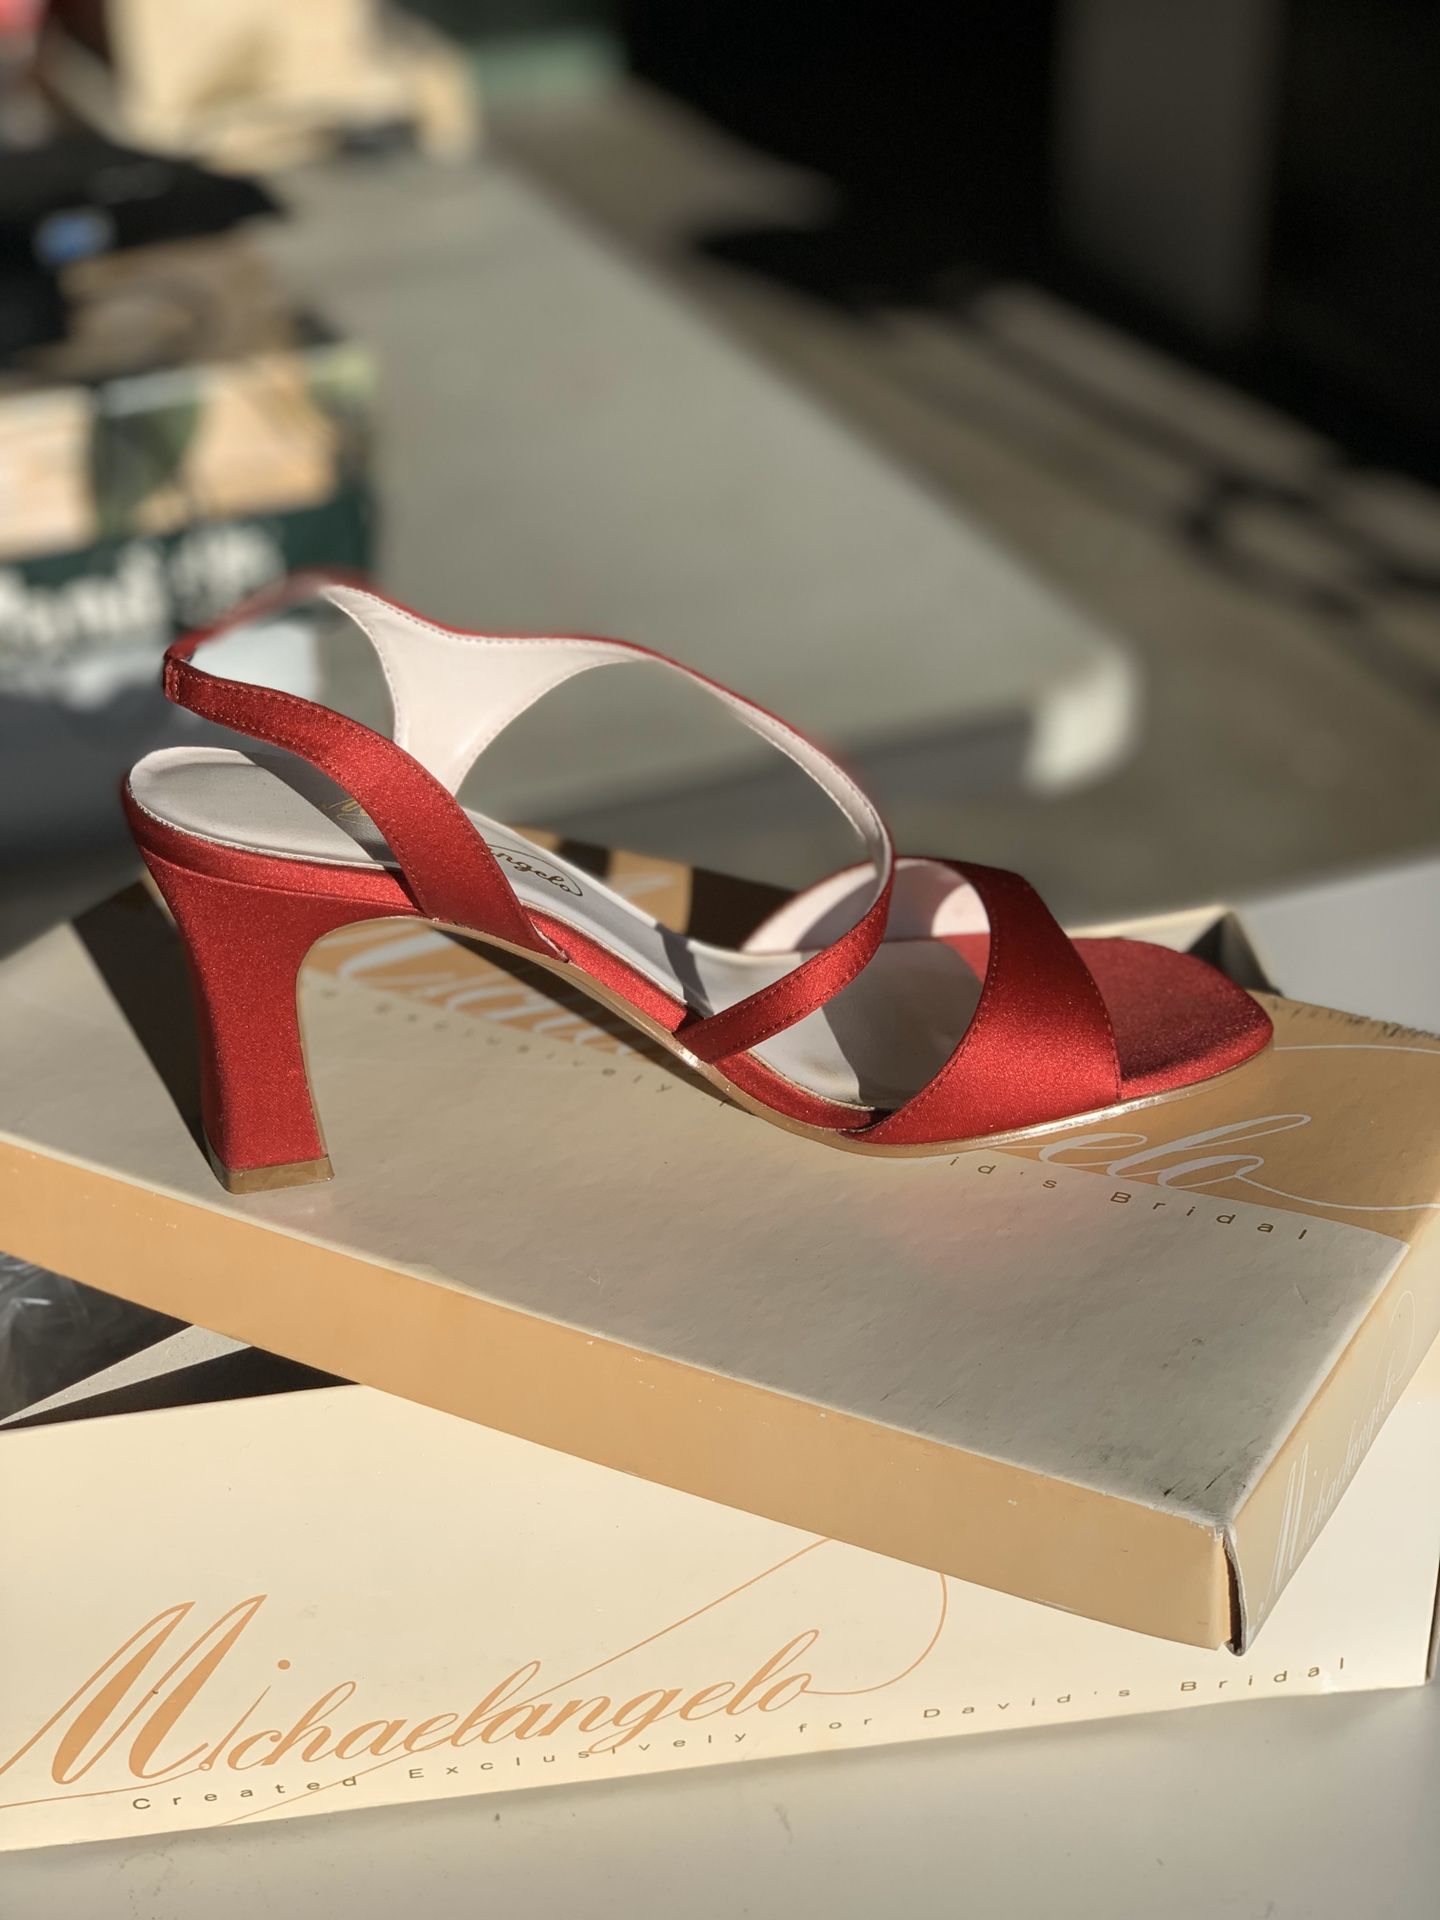 Brand new red ladies heels